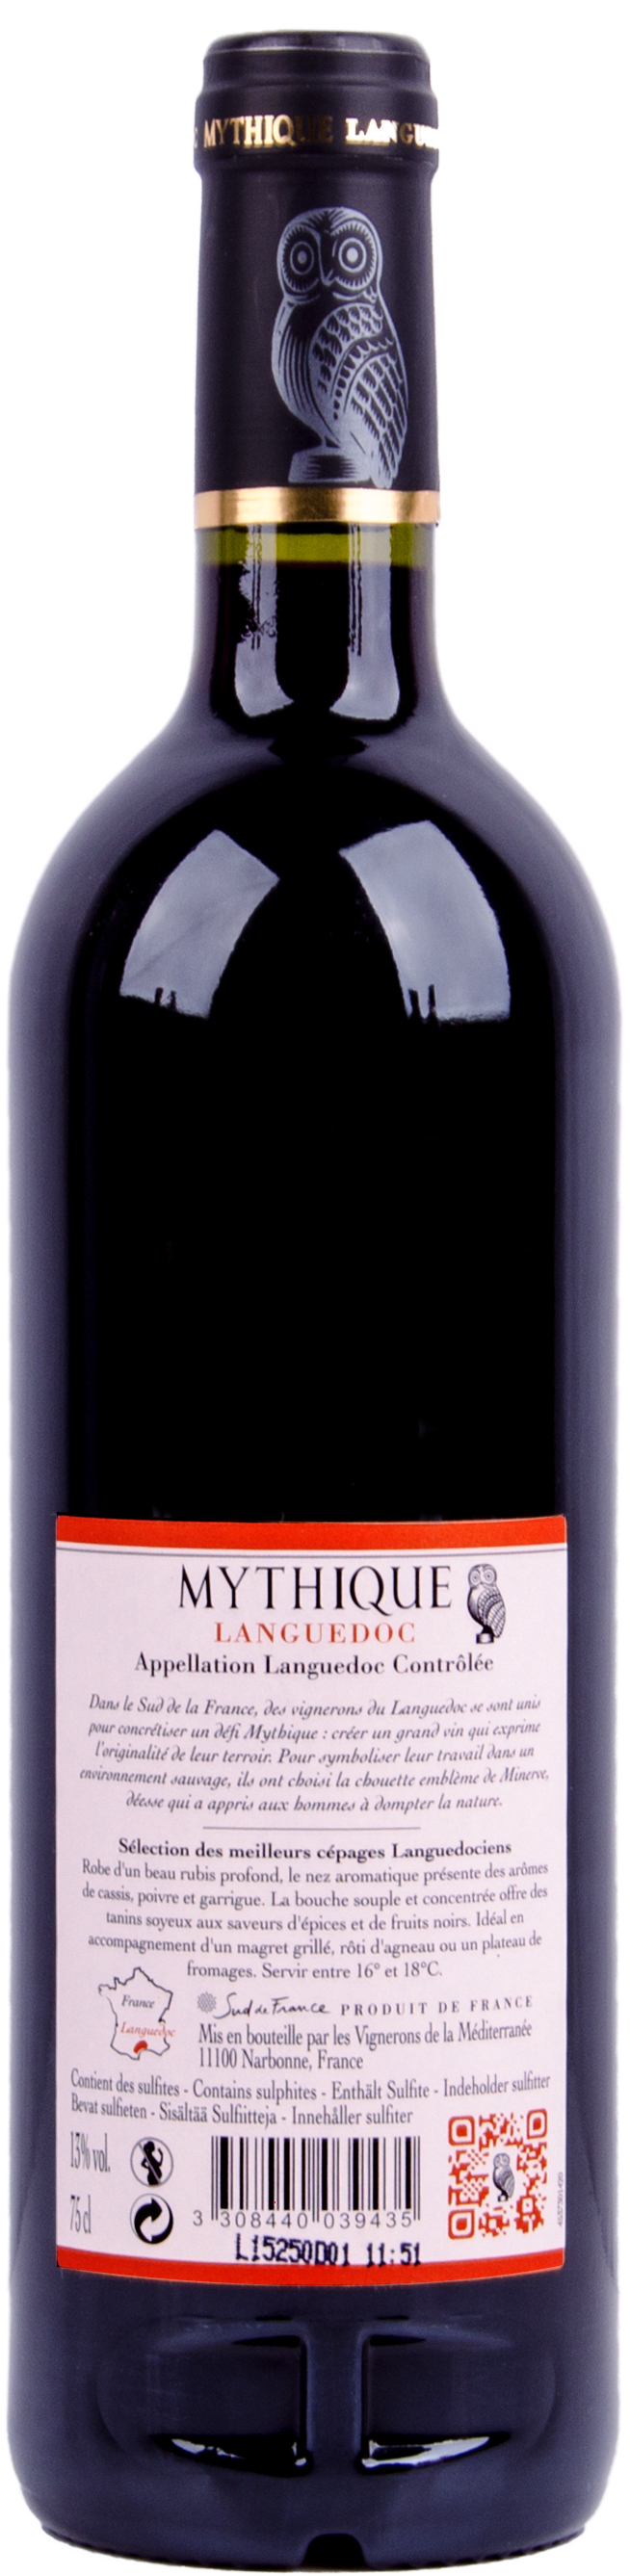 神秘客幹紅葡萄酒 MYTHIQUE LANGUEDOC RED